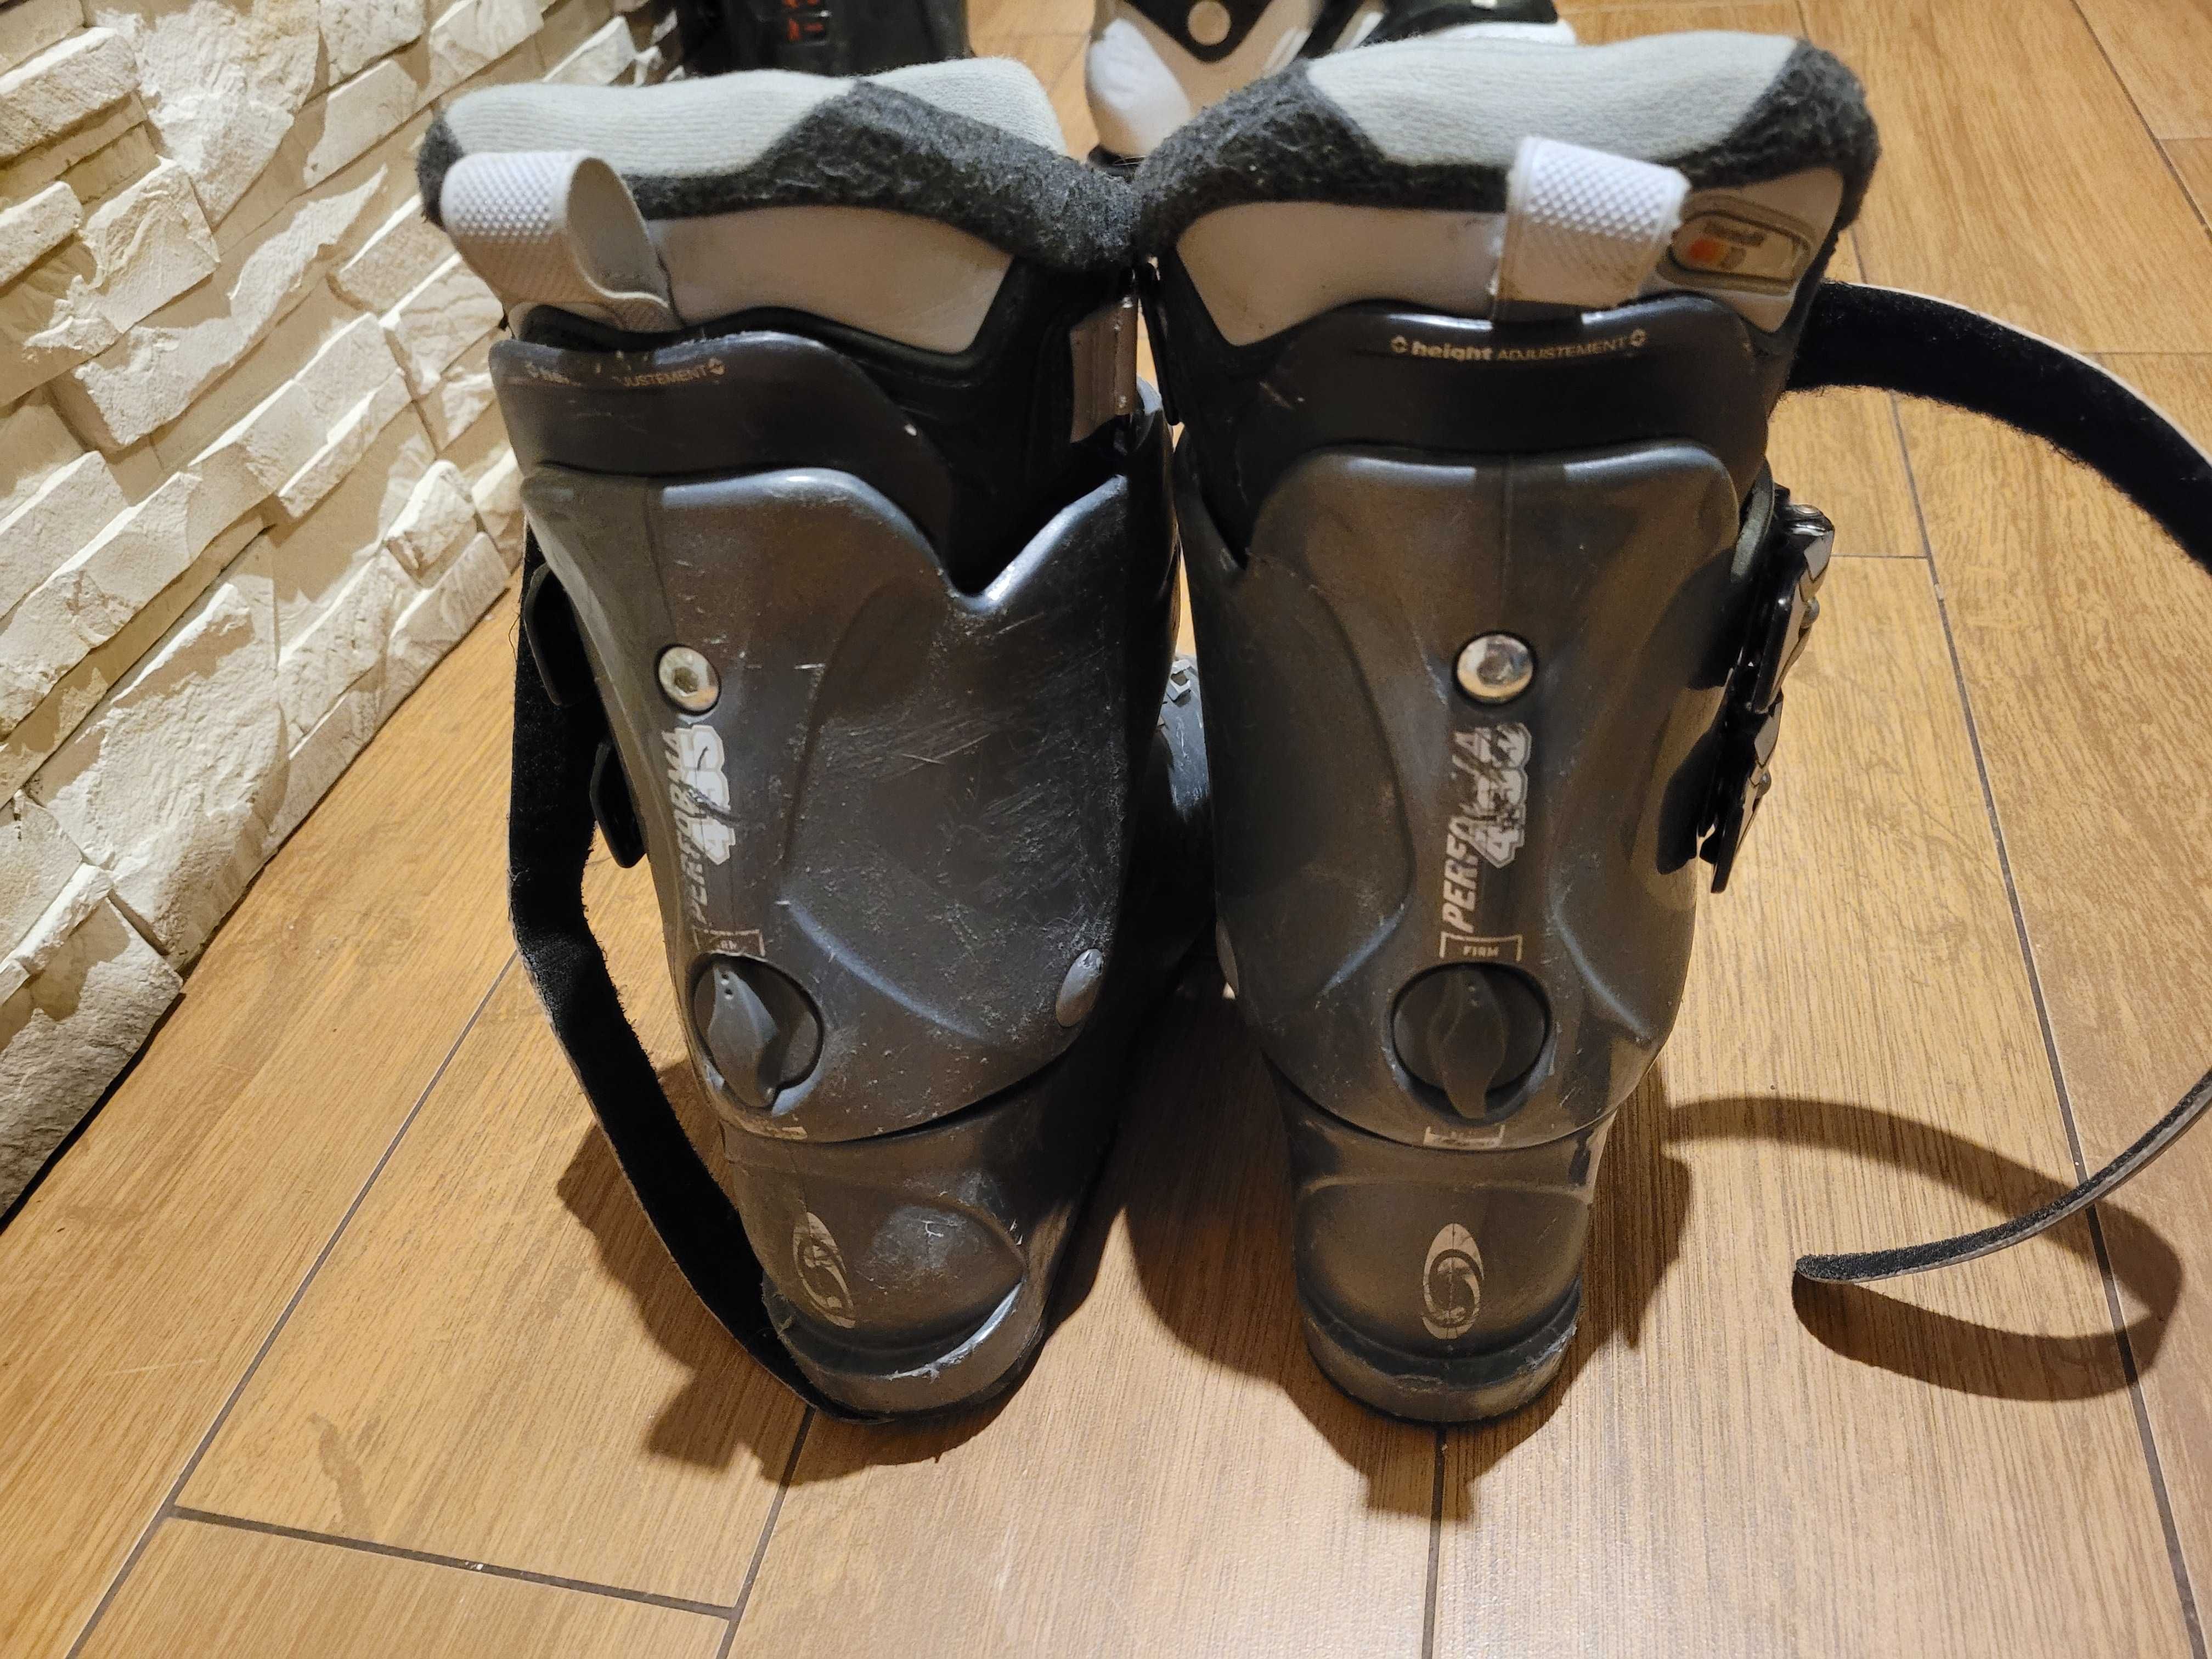 Buty narciarskie Salomon rozmiar 24,5 (39)